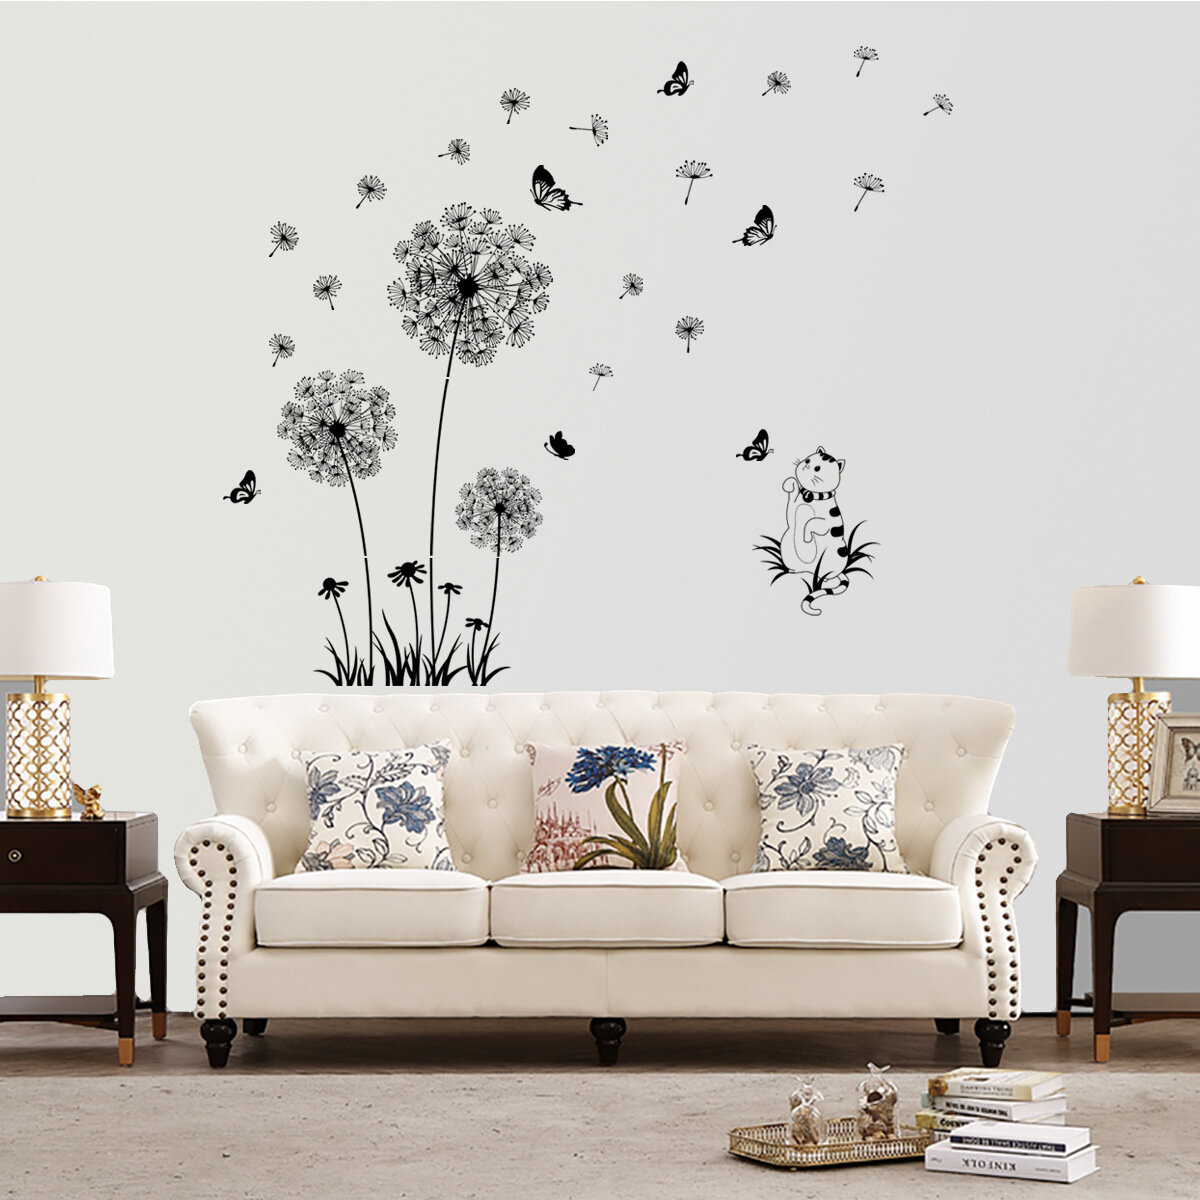 Наклейка "Одуванчики с бабочками и котиком" для стен, для мебели, для дверей, для окон интерьерная. Боьшие размеры от 115*100 см.